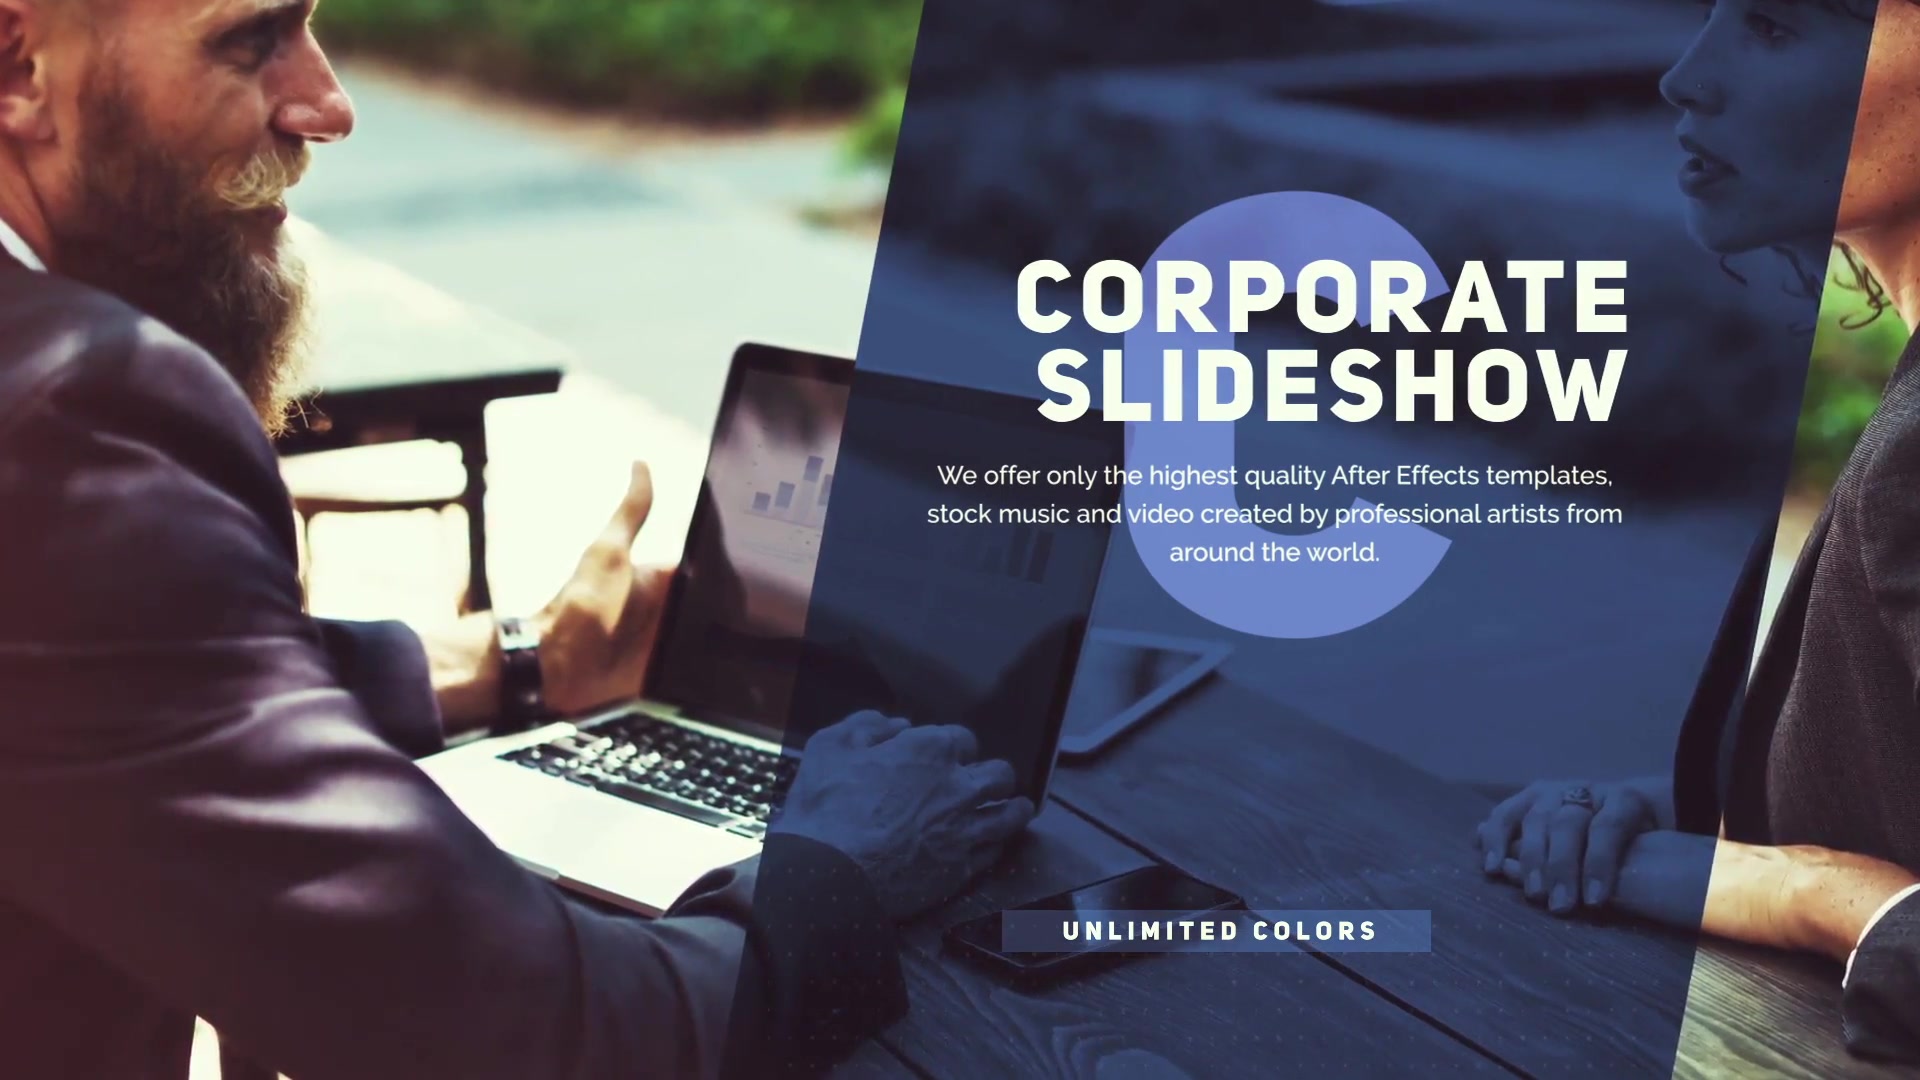 Corporate Slideshow Videohive 24767991 Premiere Pro Image 6